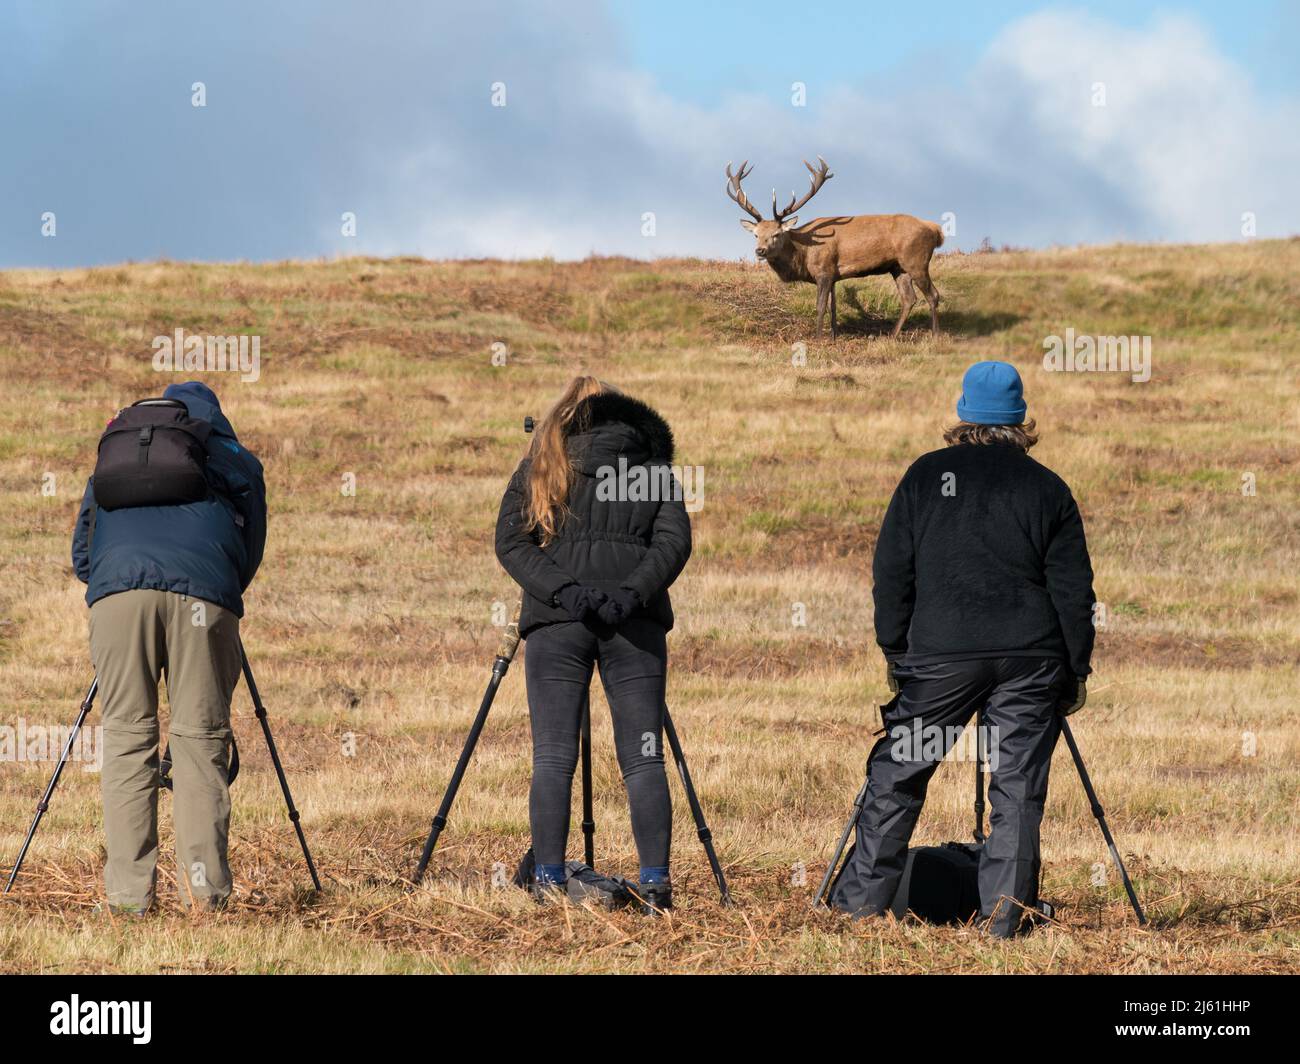 Photographes de la faune avec des trépieds photographiant le cerf de Red Deer à Bradgate Park, Leicestershire, Angleterre. (MONTAGE - DEER ET PHOTOGRAPHES EN AVANT-PLAN) Banque D'Images